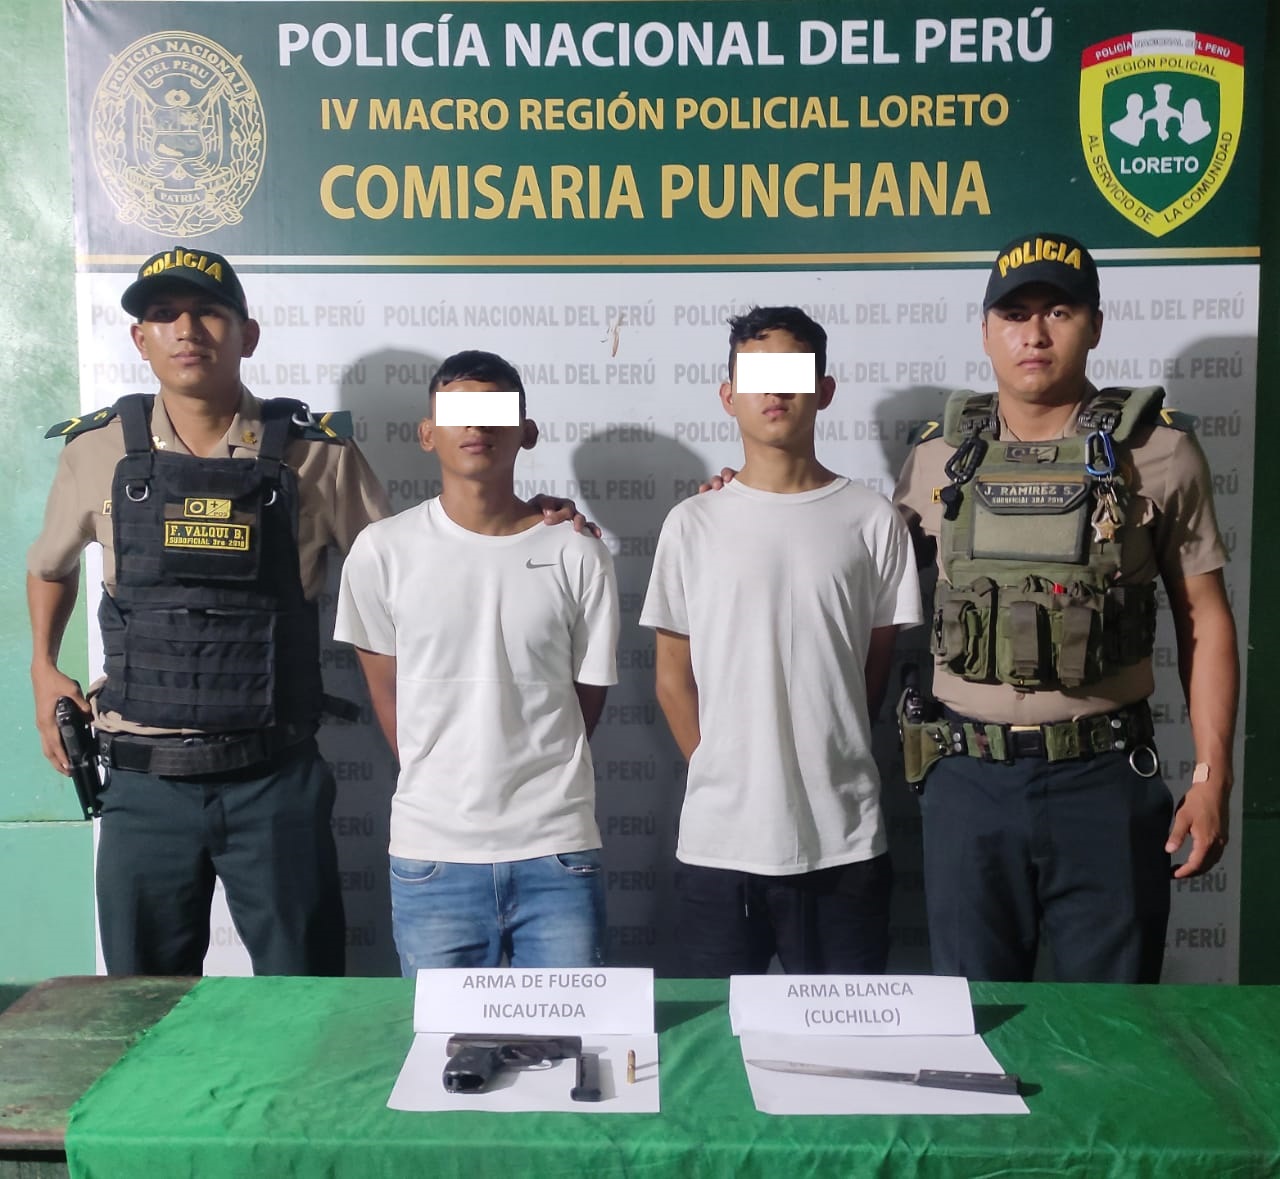 Policías de Punchana desarticulan banda criminal “Los hijos del Hampa”